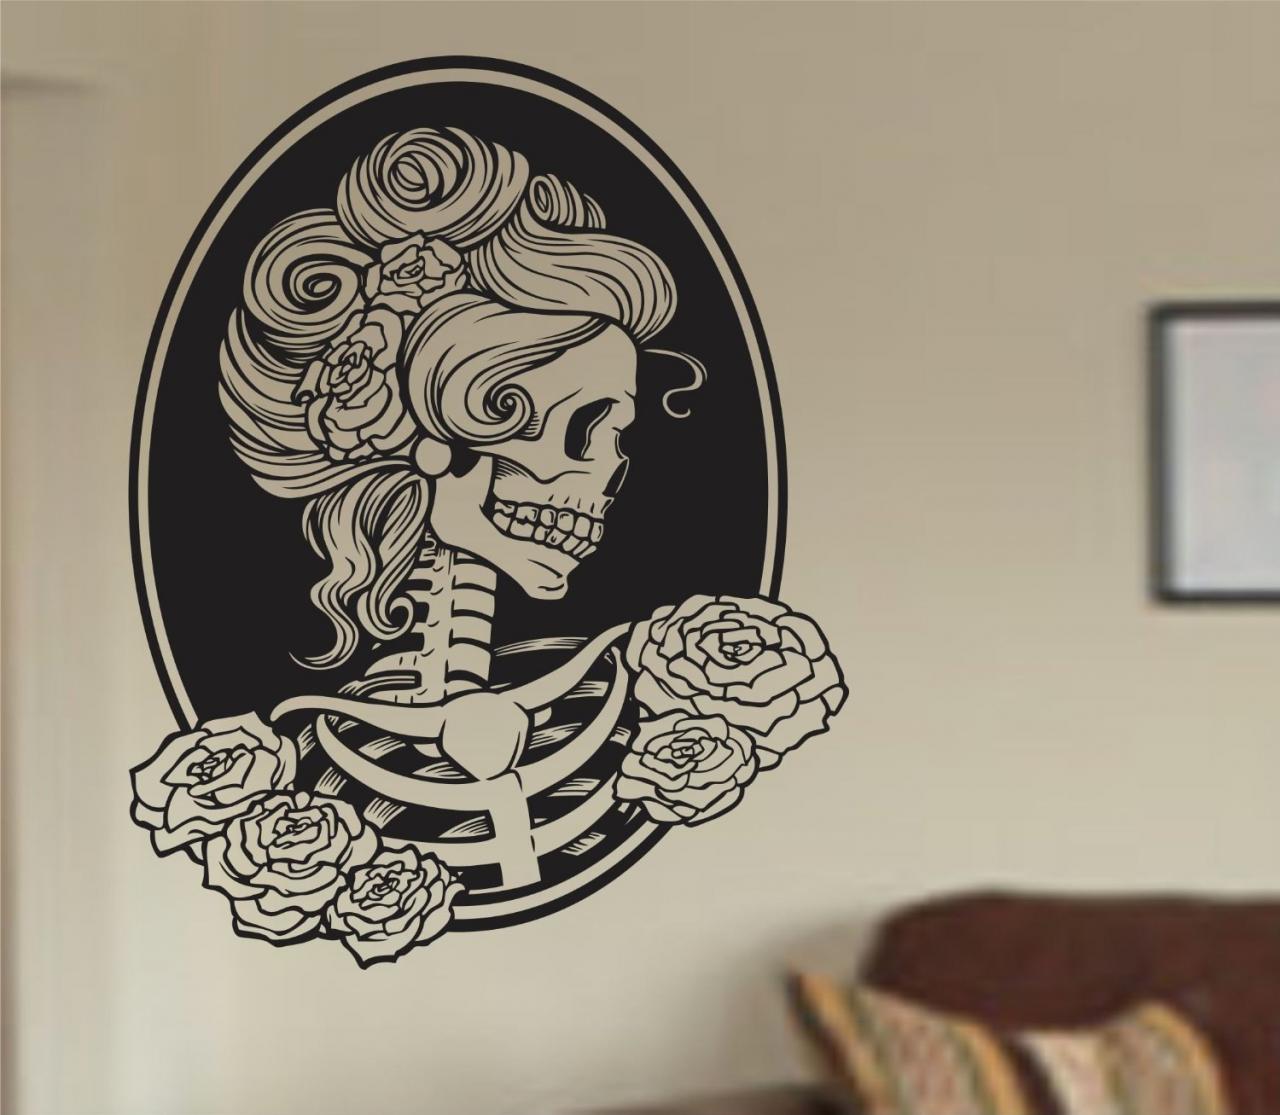 Extra Large Victorian Woman Skull Wall Vinyl Decal Sticker Art Graphic Sticker Sugar Skull Sugarskull